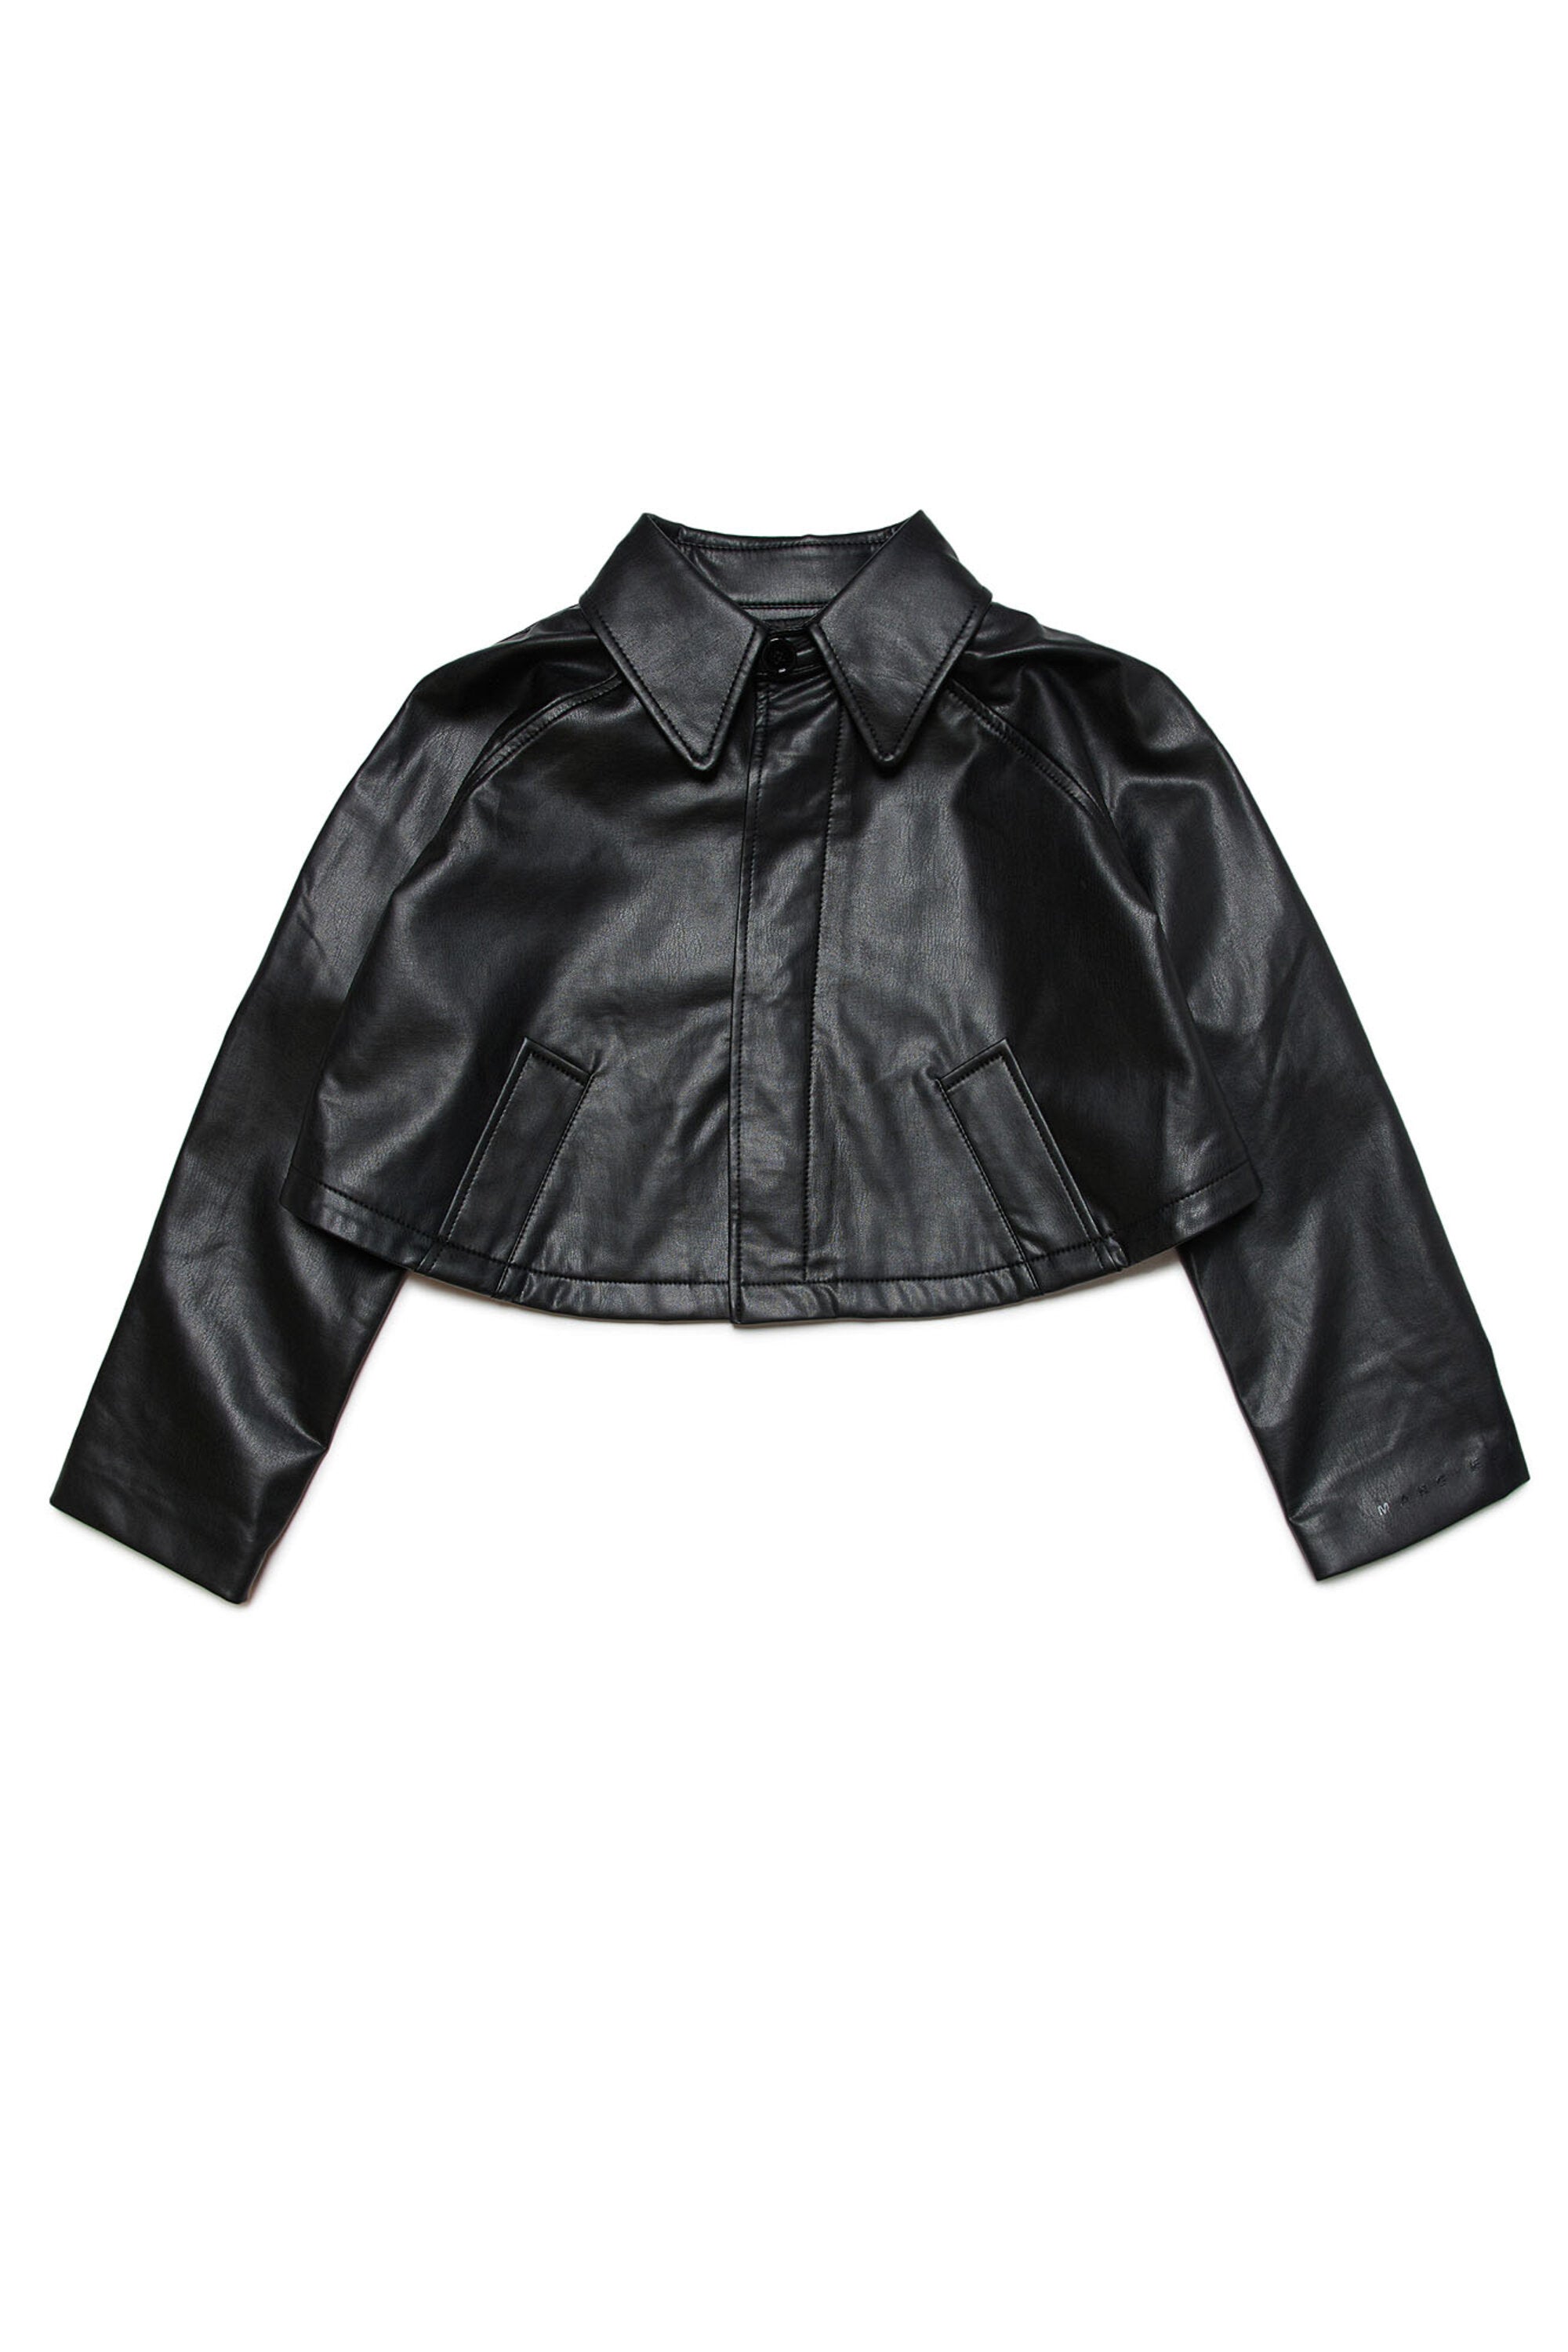 Cropped fake leather jacket